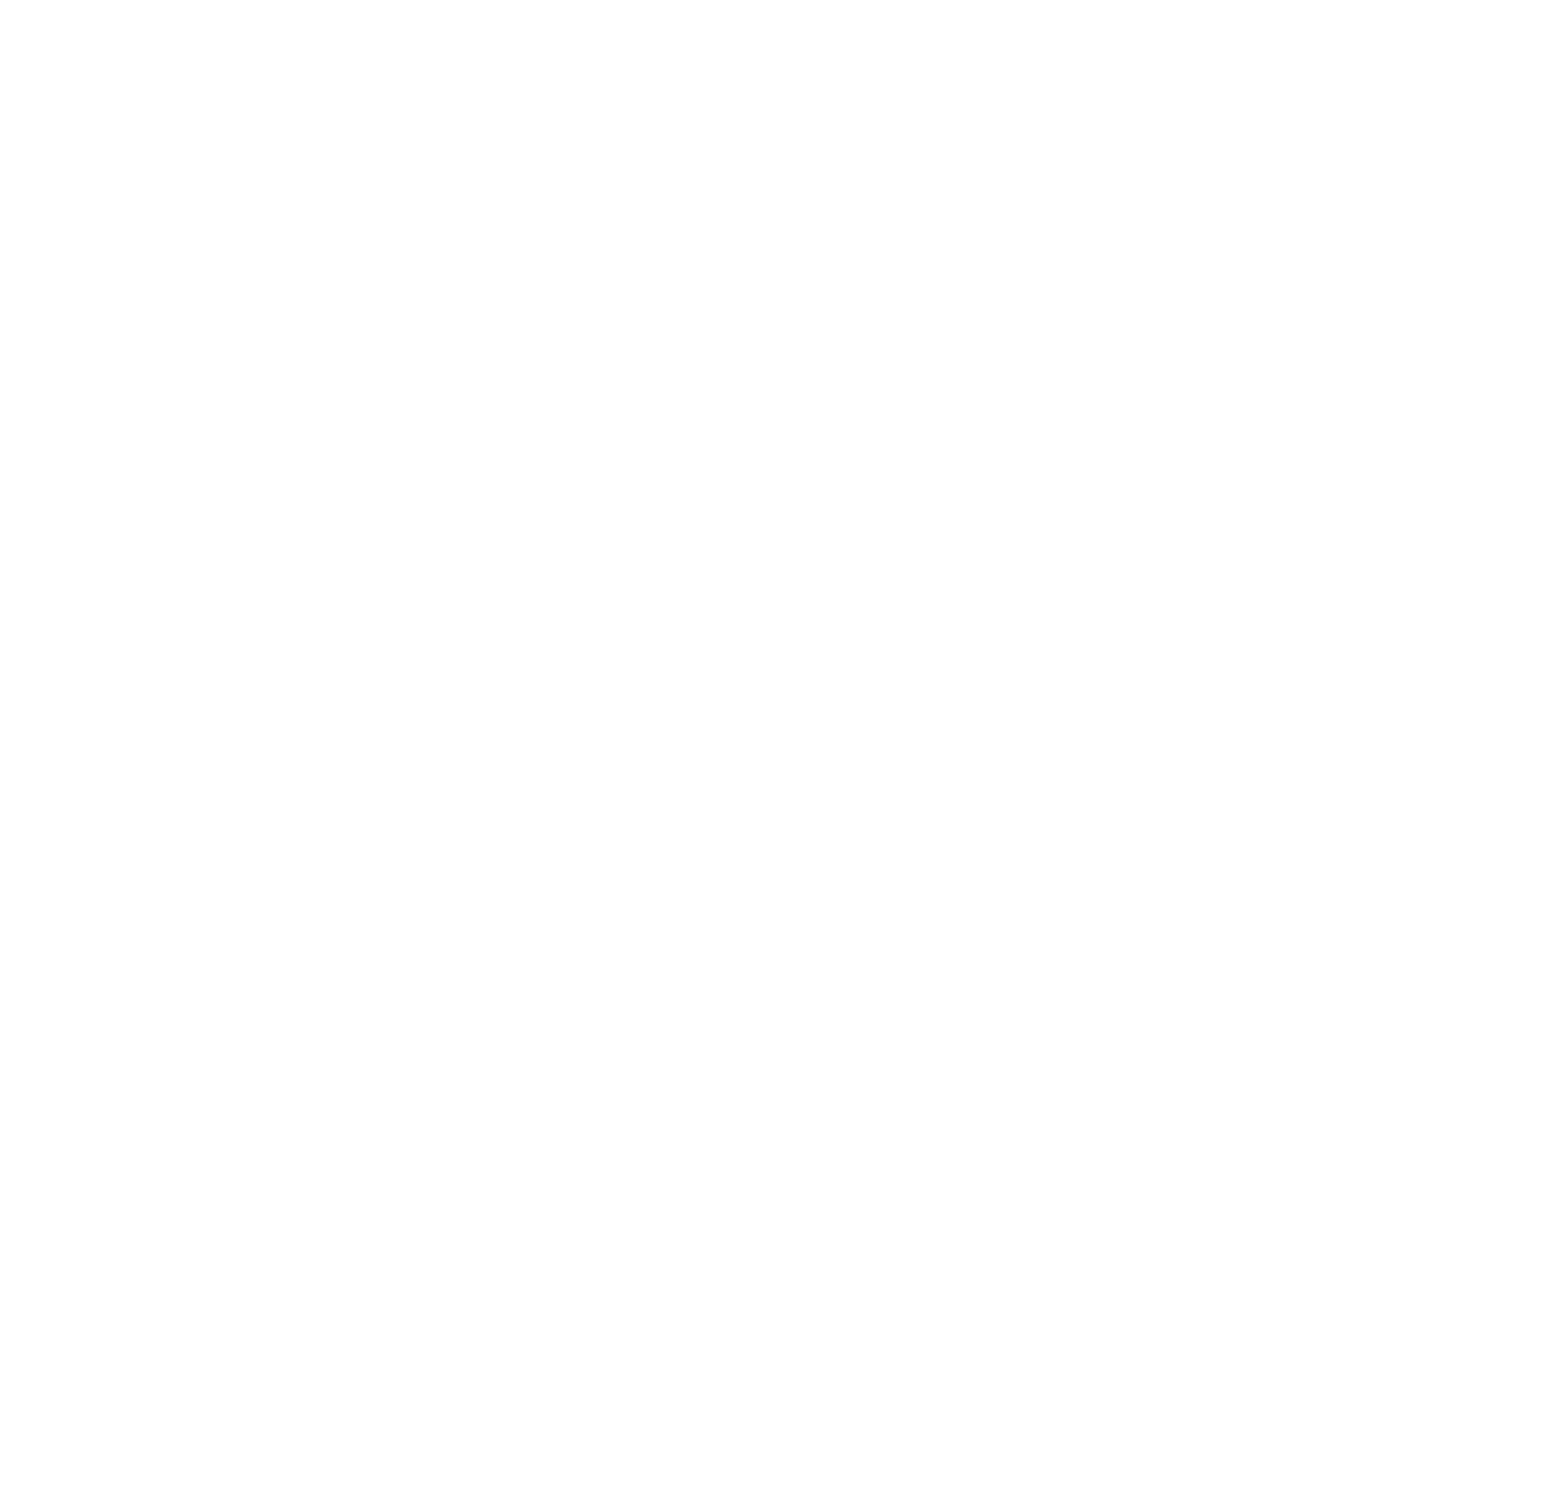 Super Group logo for dark backgrounds (transparent PNG)